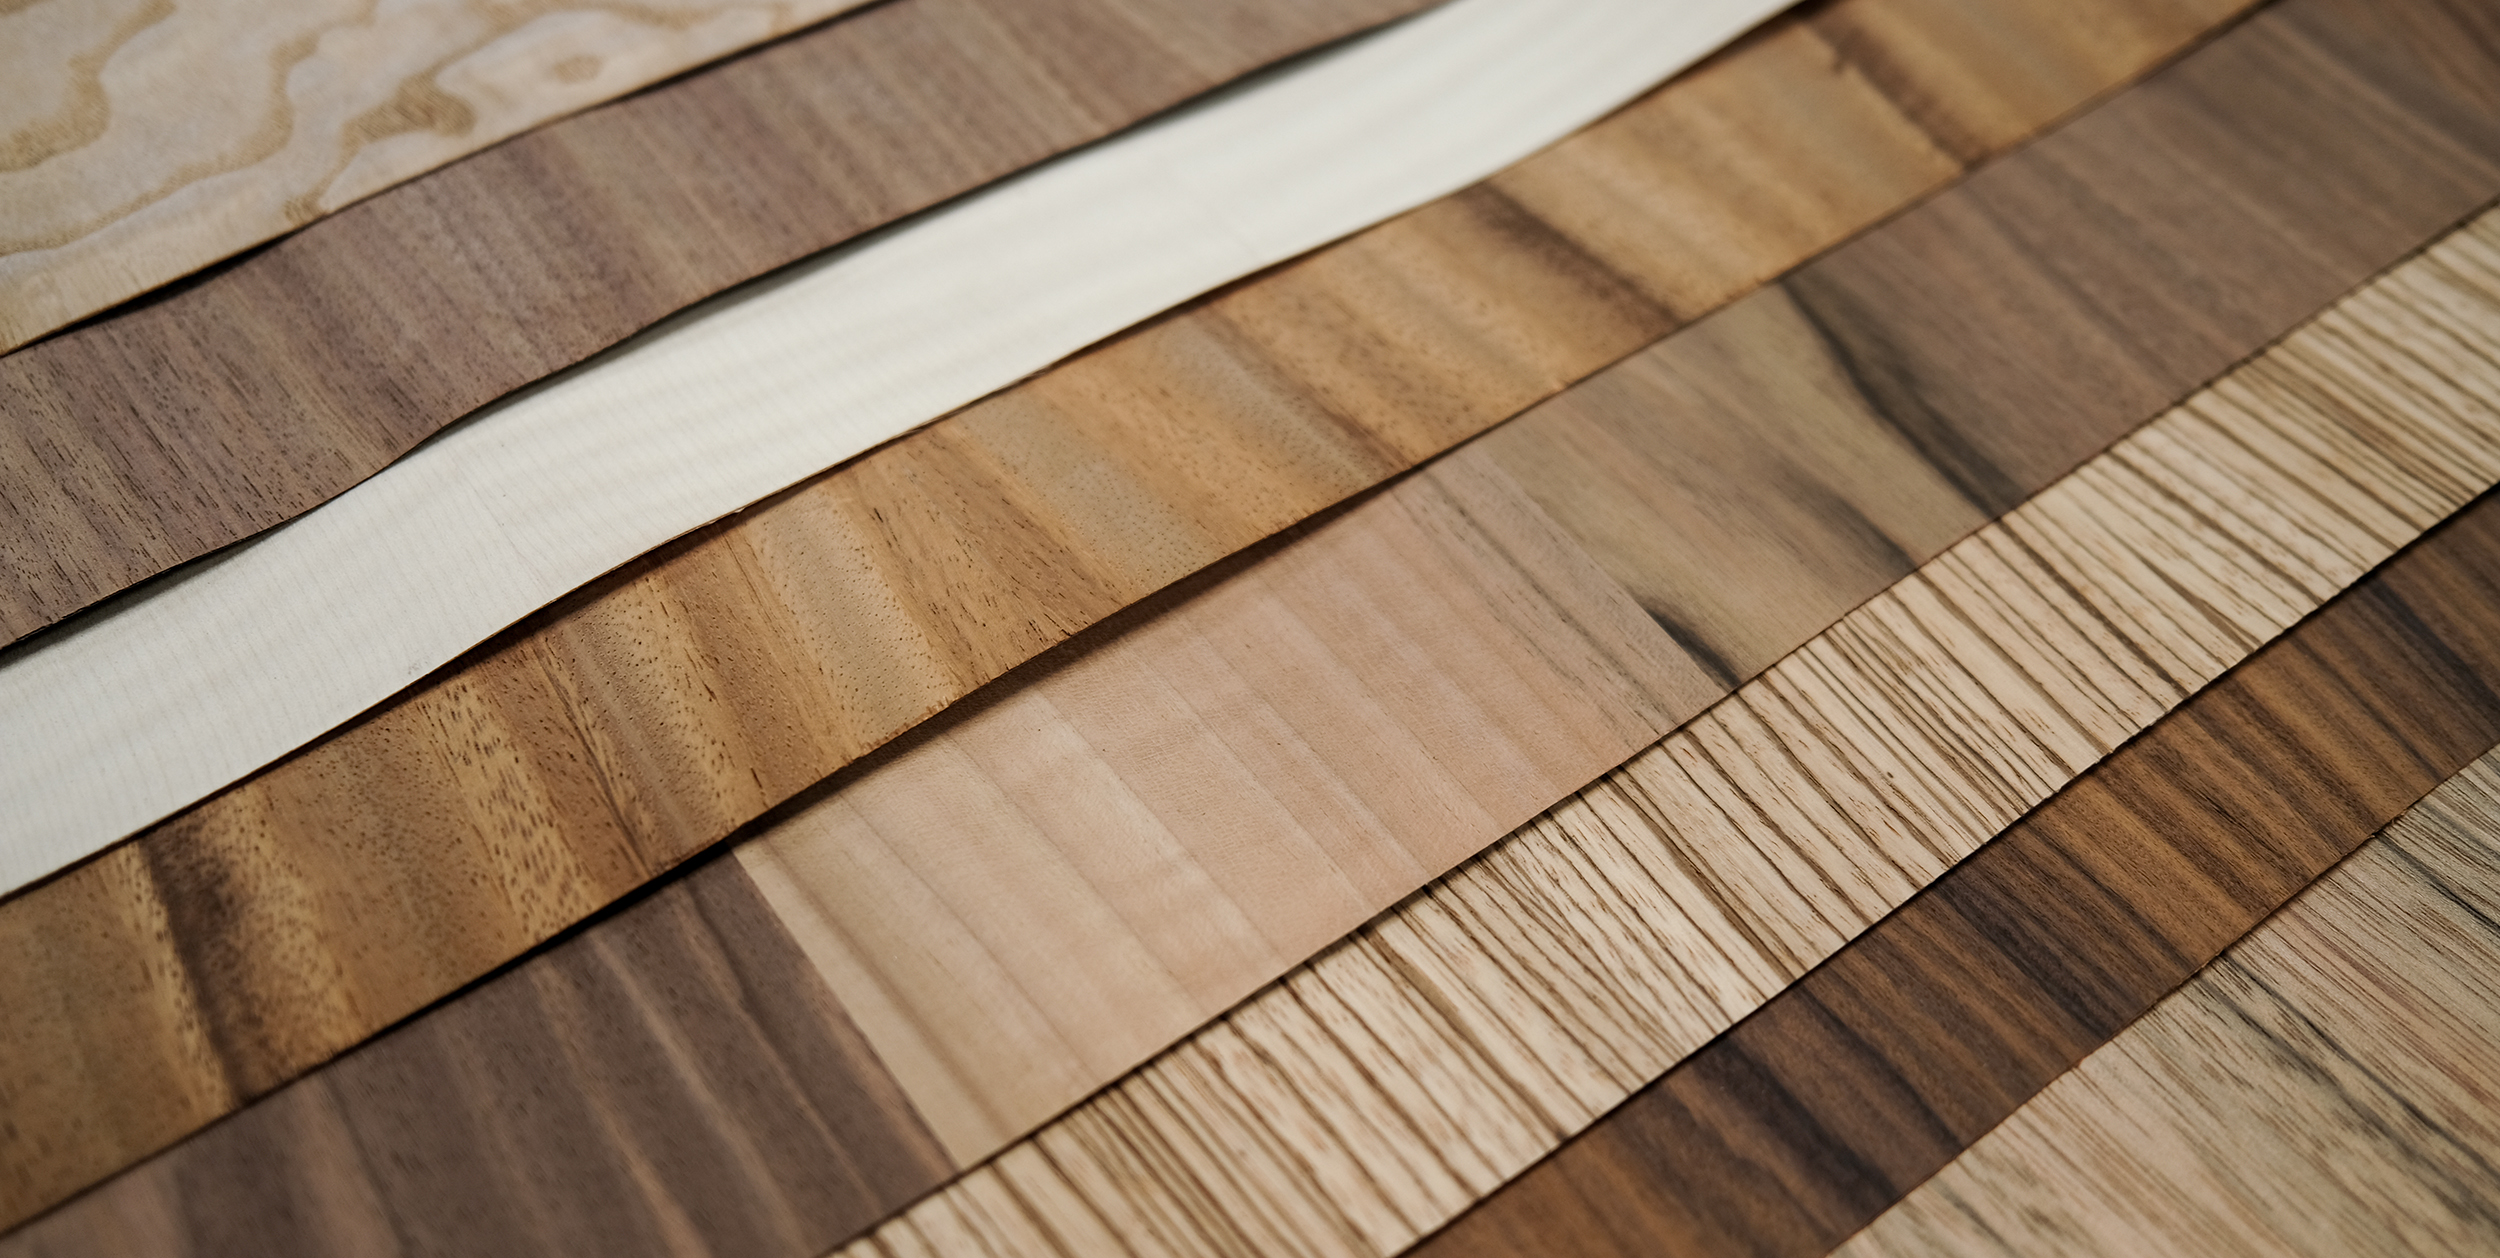 Wood Veneer Sheets, Veneered Panels, Live Edge Slabs